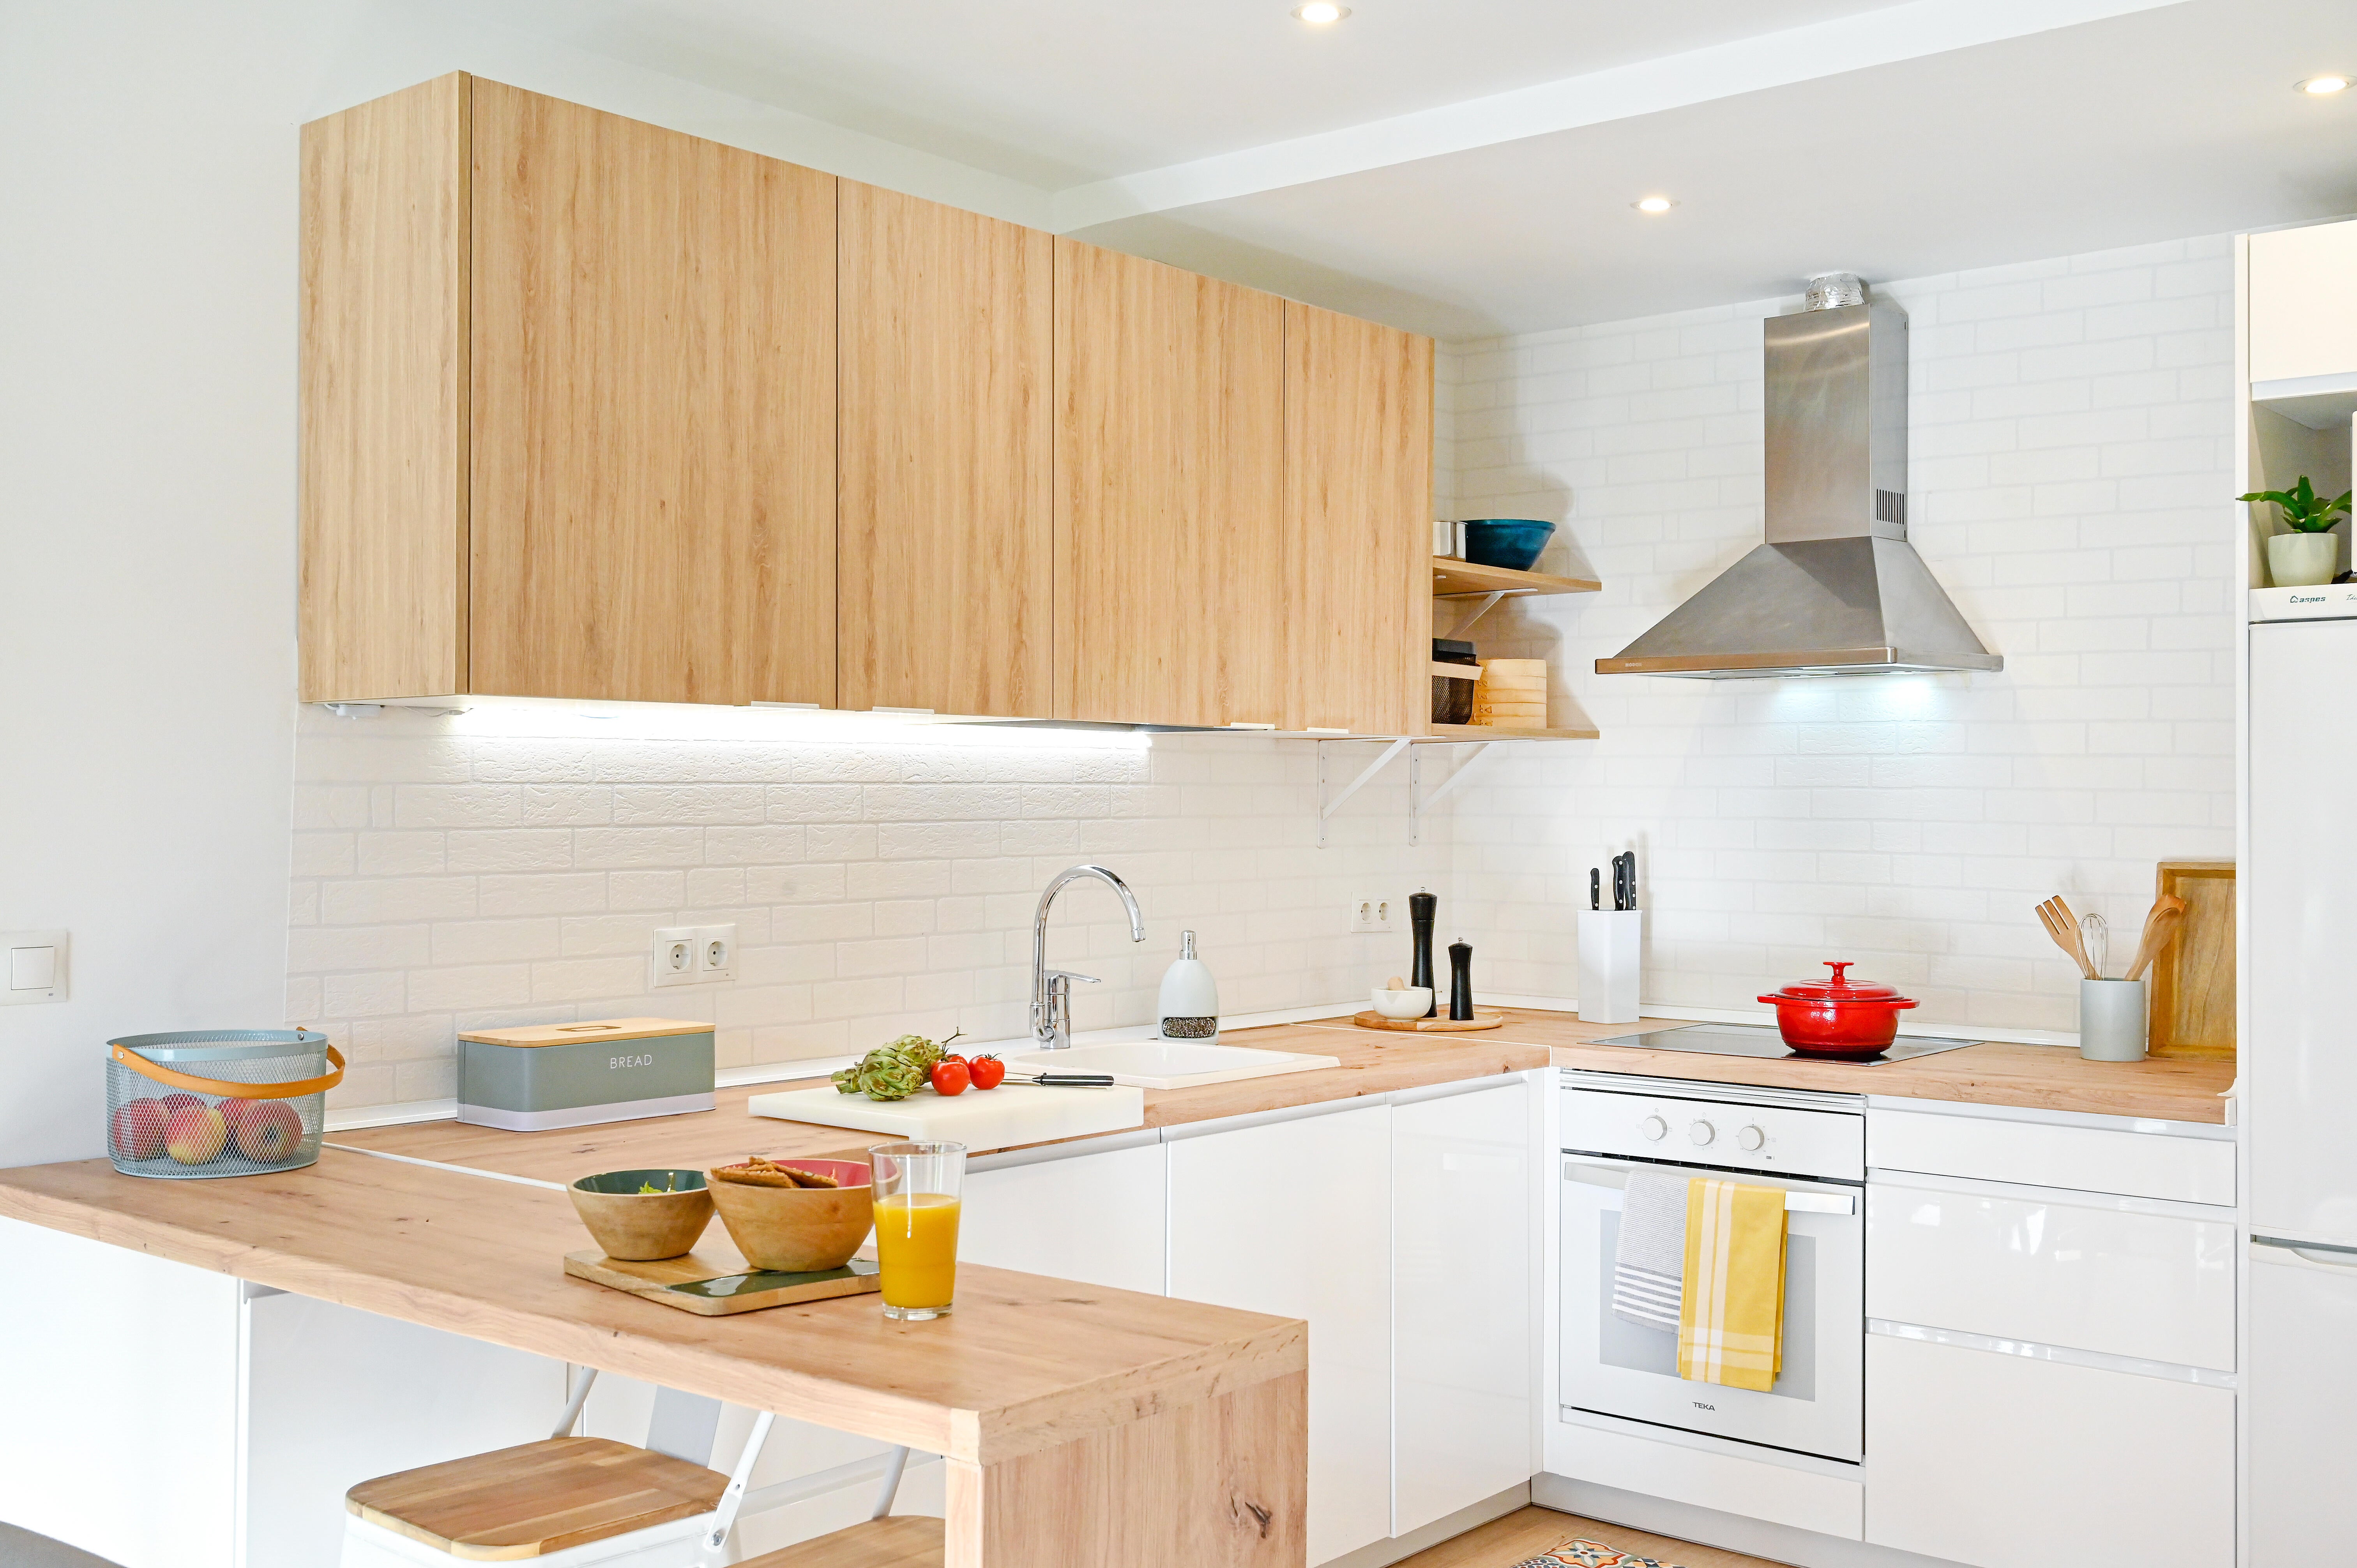 Reforma de una cocina abierta en y madera para una vivienda moderna tipo loft | Leroy Merlin